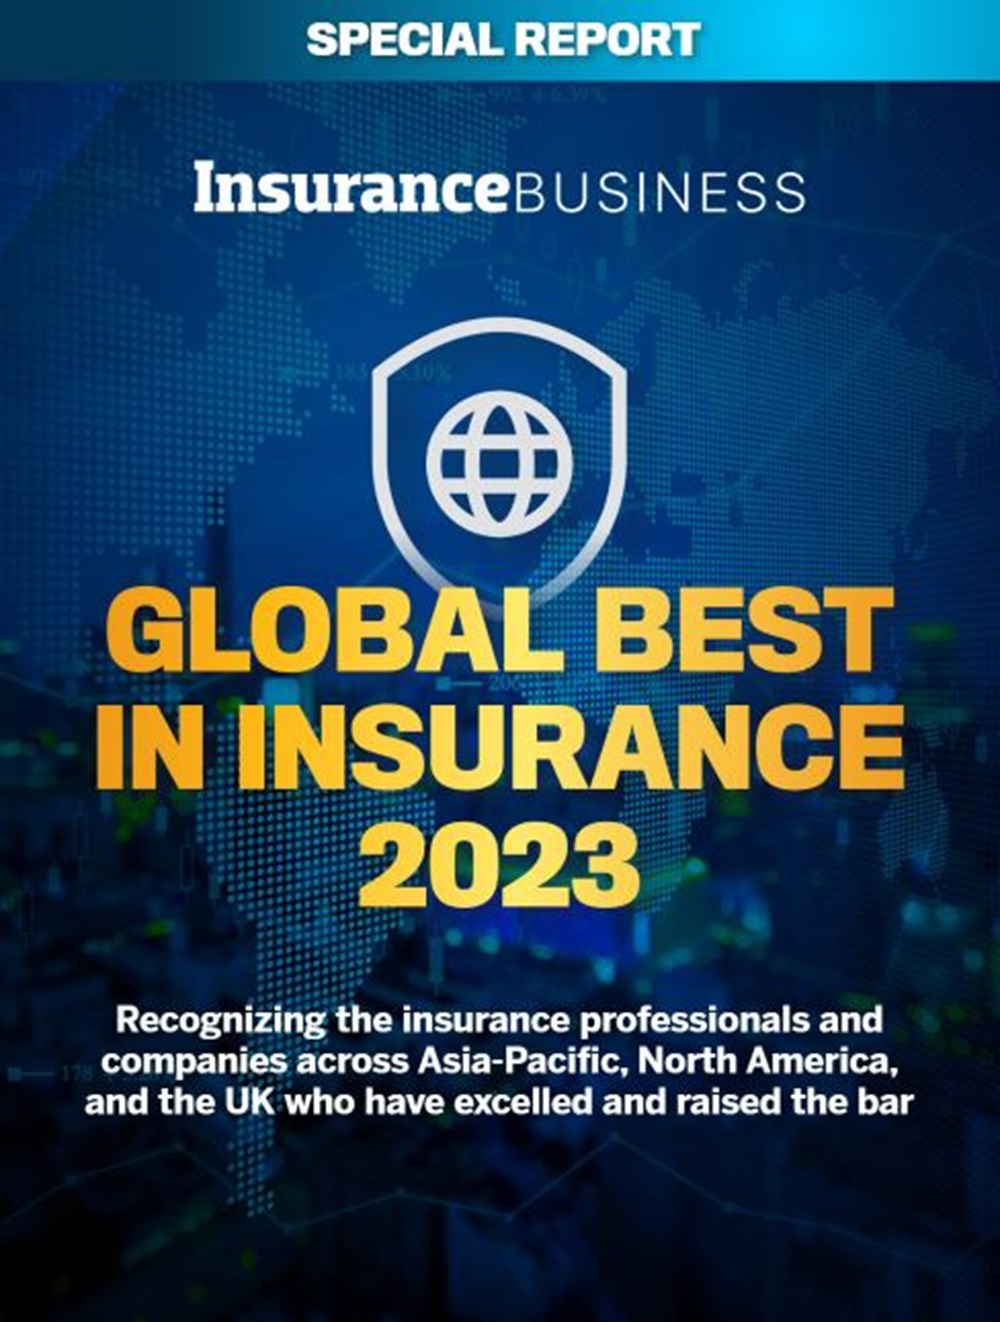 Une capture d'écran de la page de couverture de Insurance Business's Special Report "Global Best in Insurance 2023".